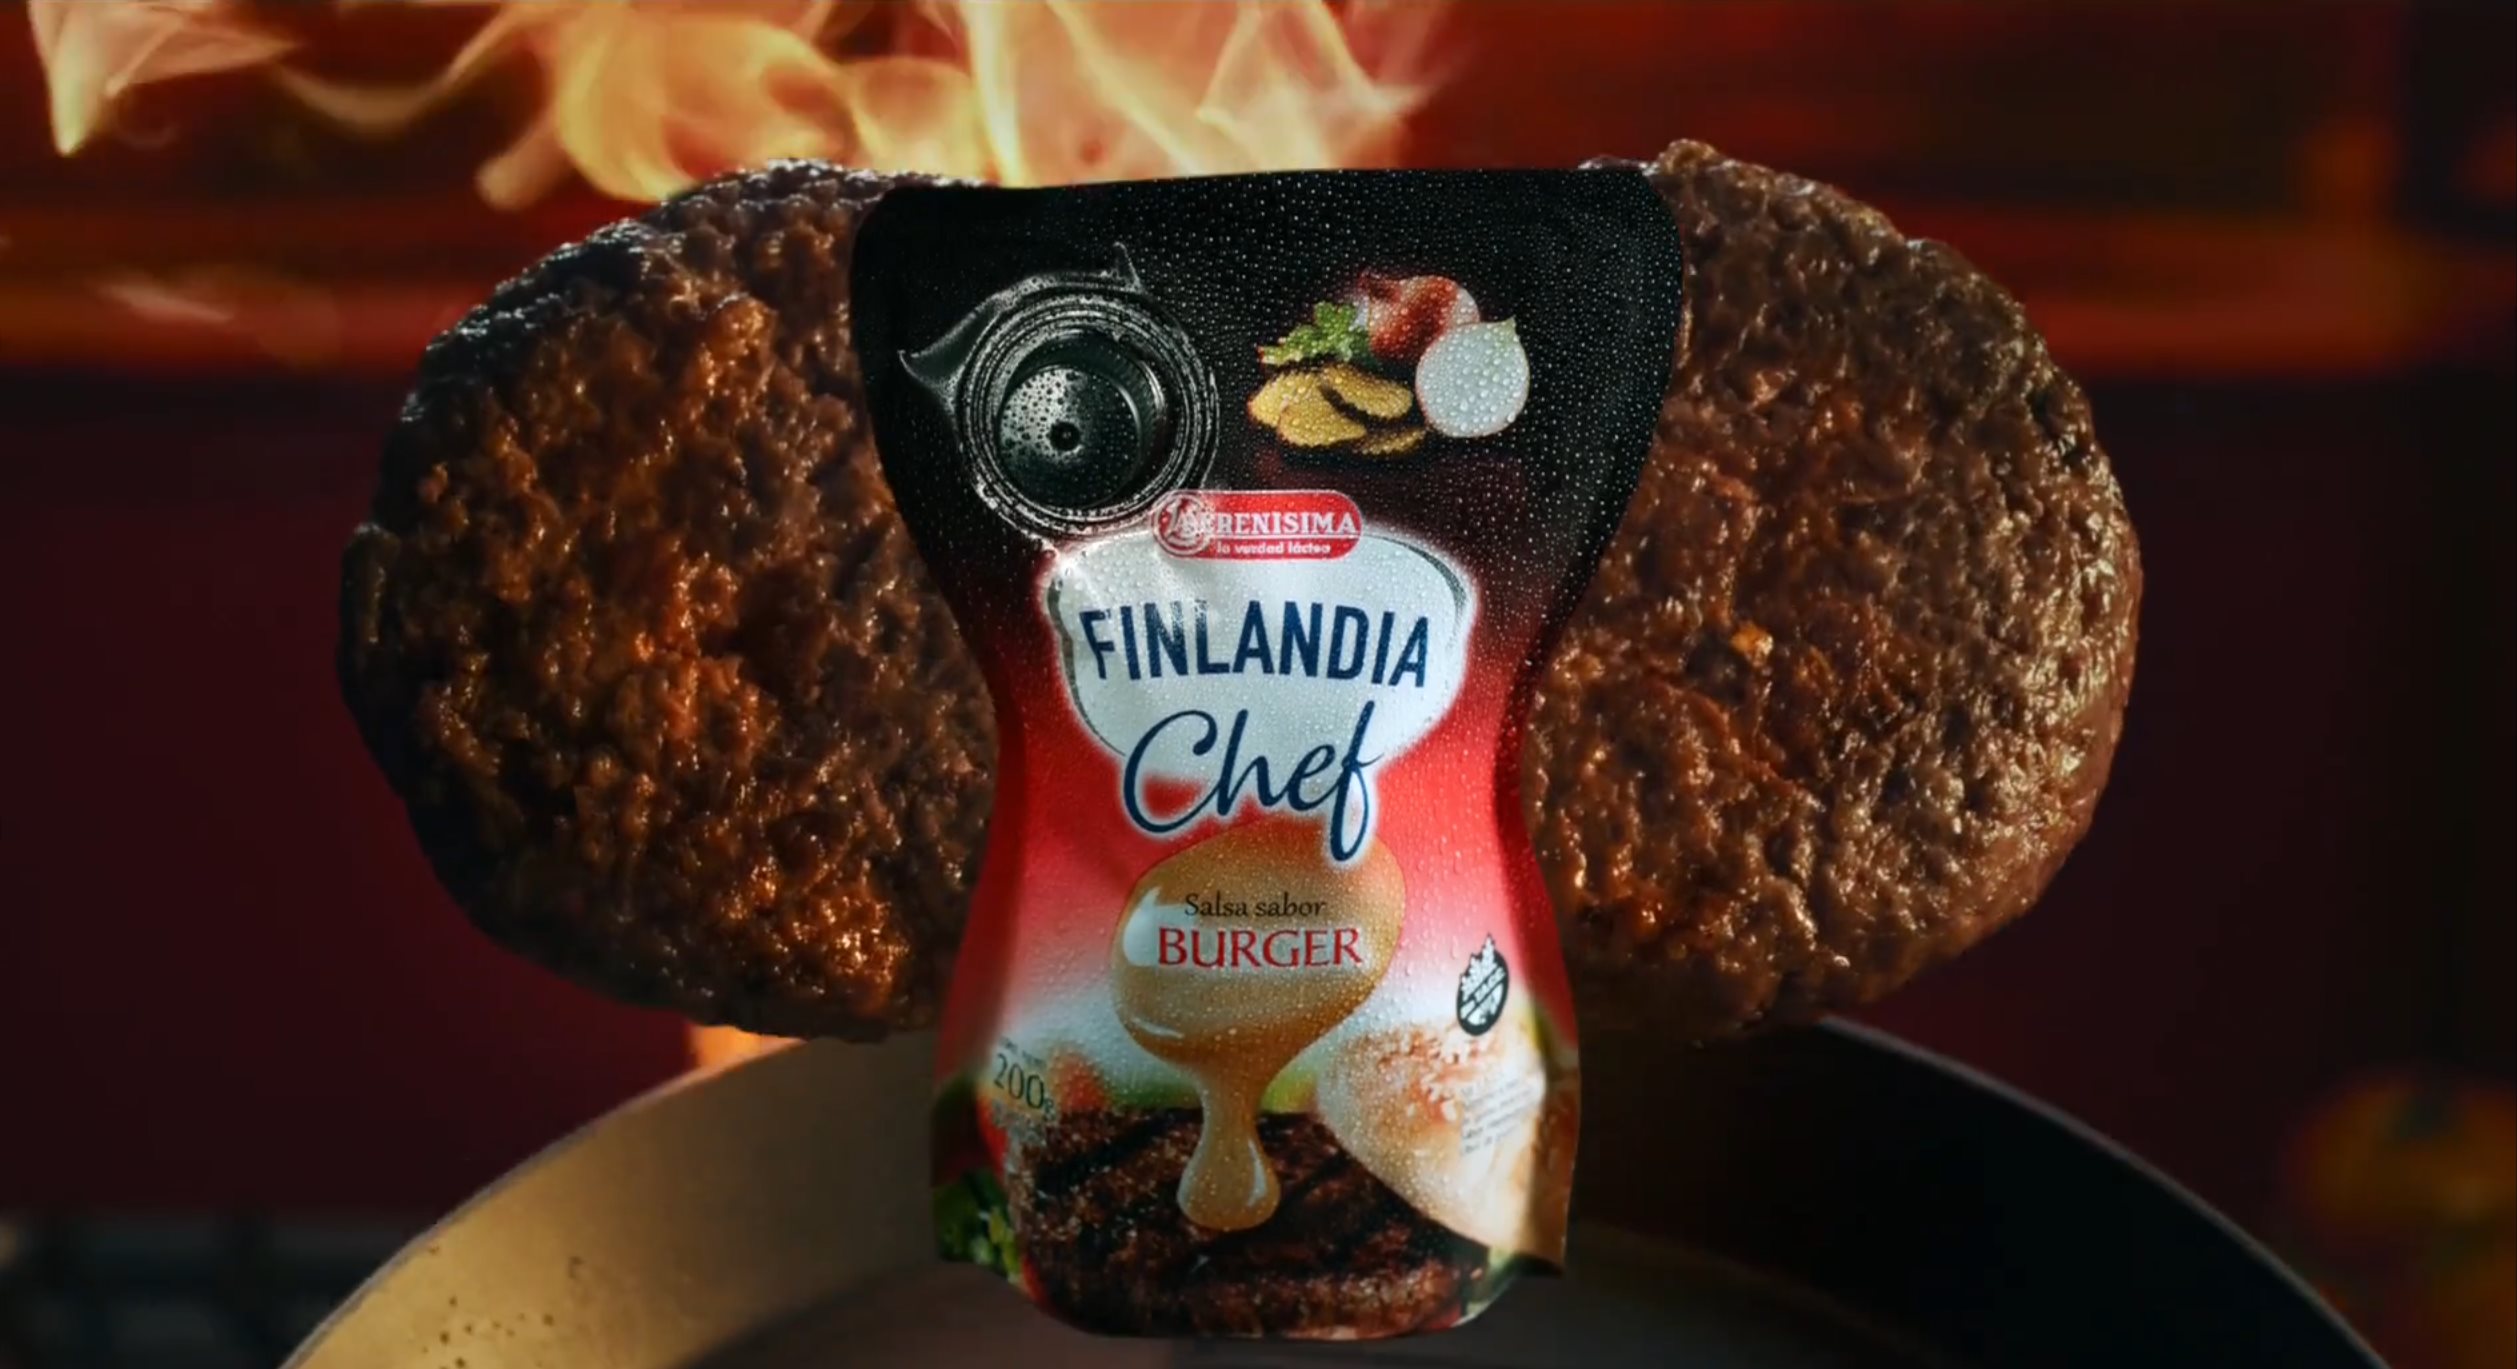 Finlandia - Chef